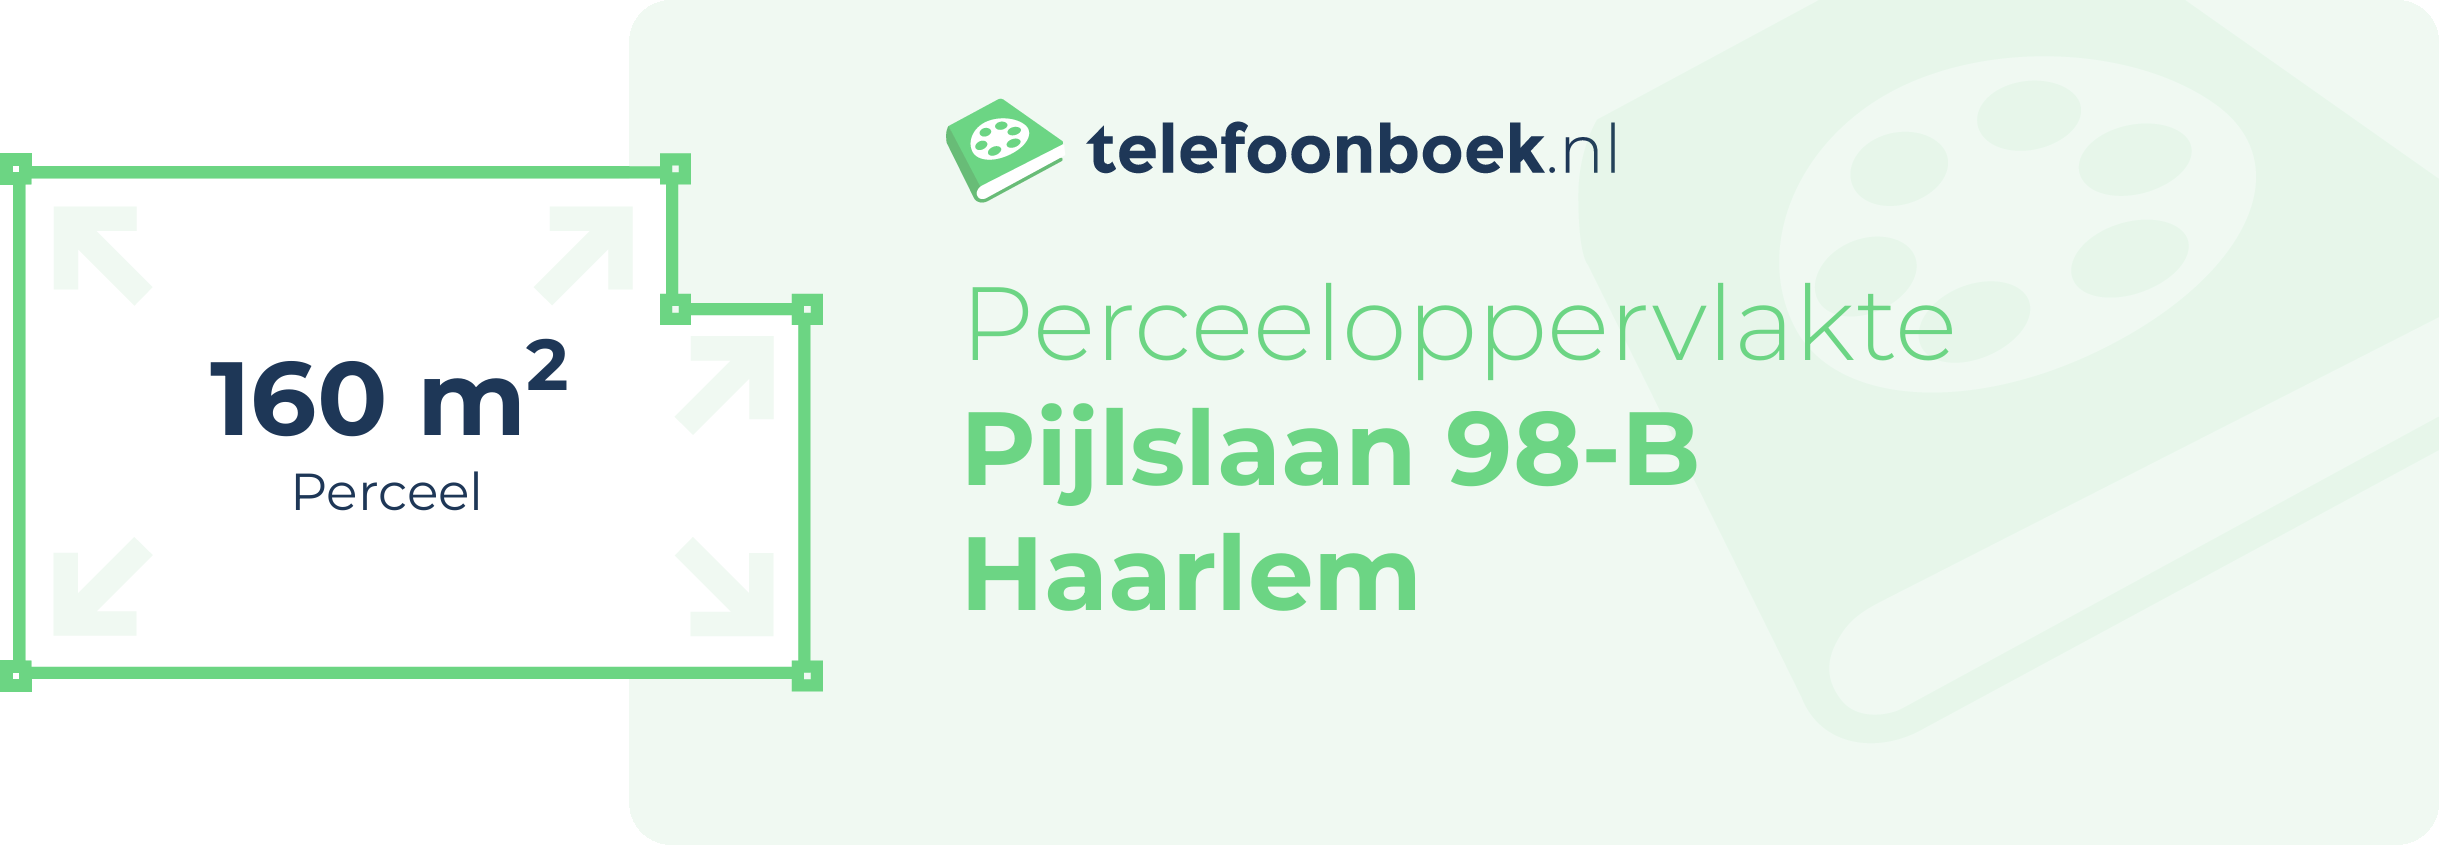 Perceeloppervlakte Pijlslaan 98-B Haarlem